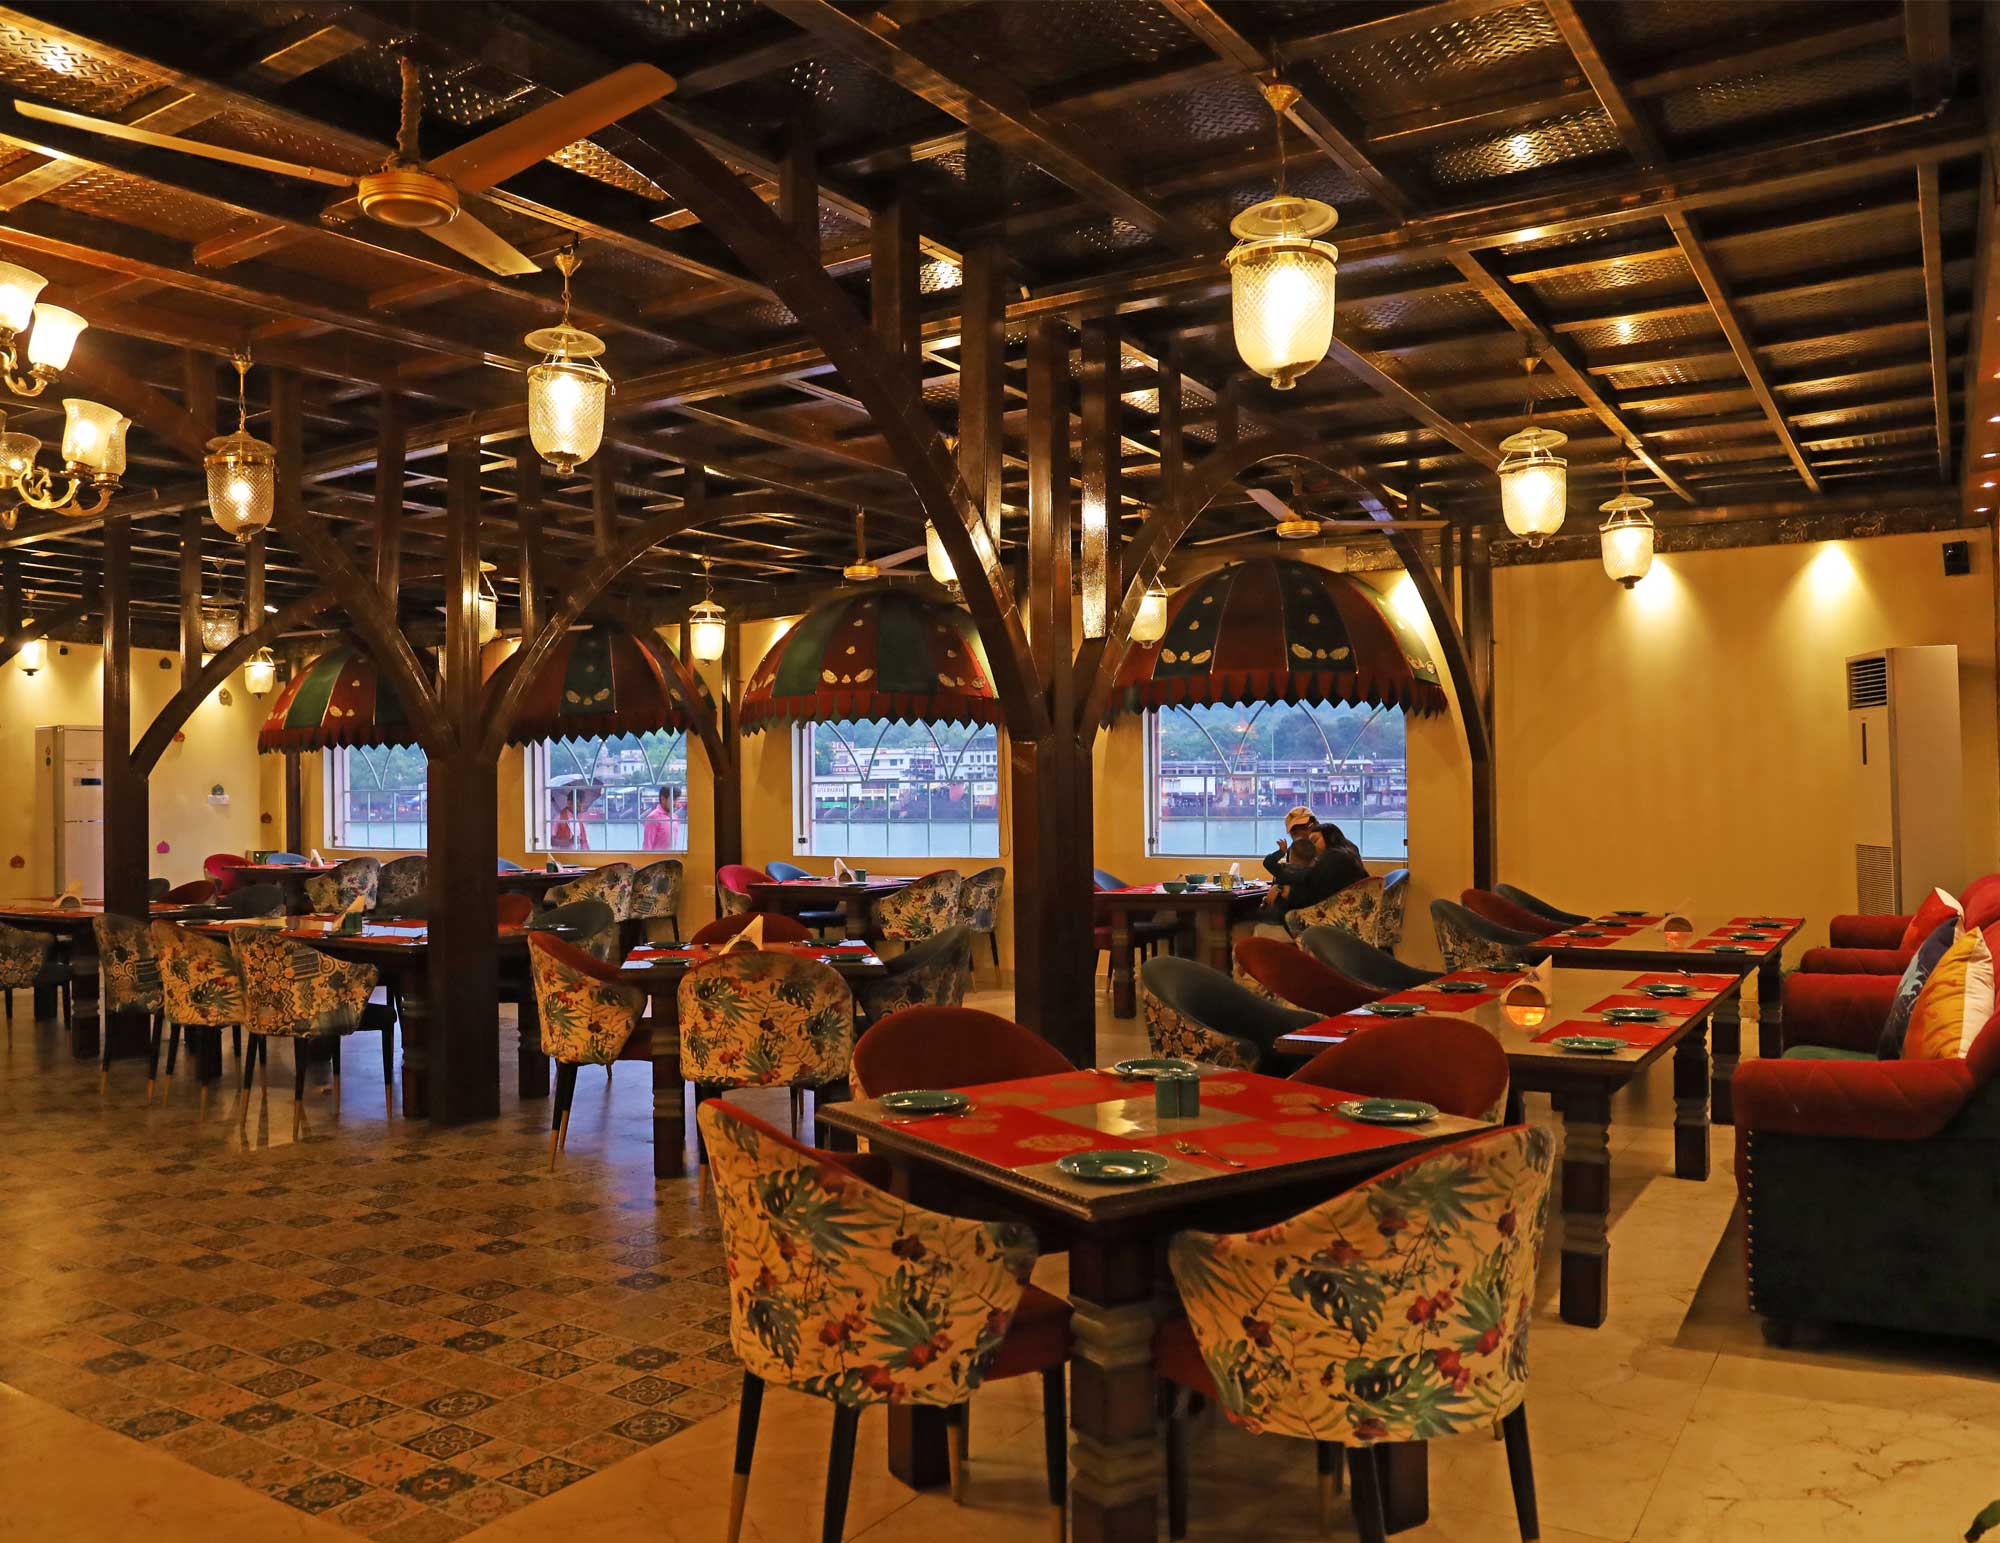 Naivedyam Bhog - Ganga View Restaurant in Rishikesh